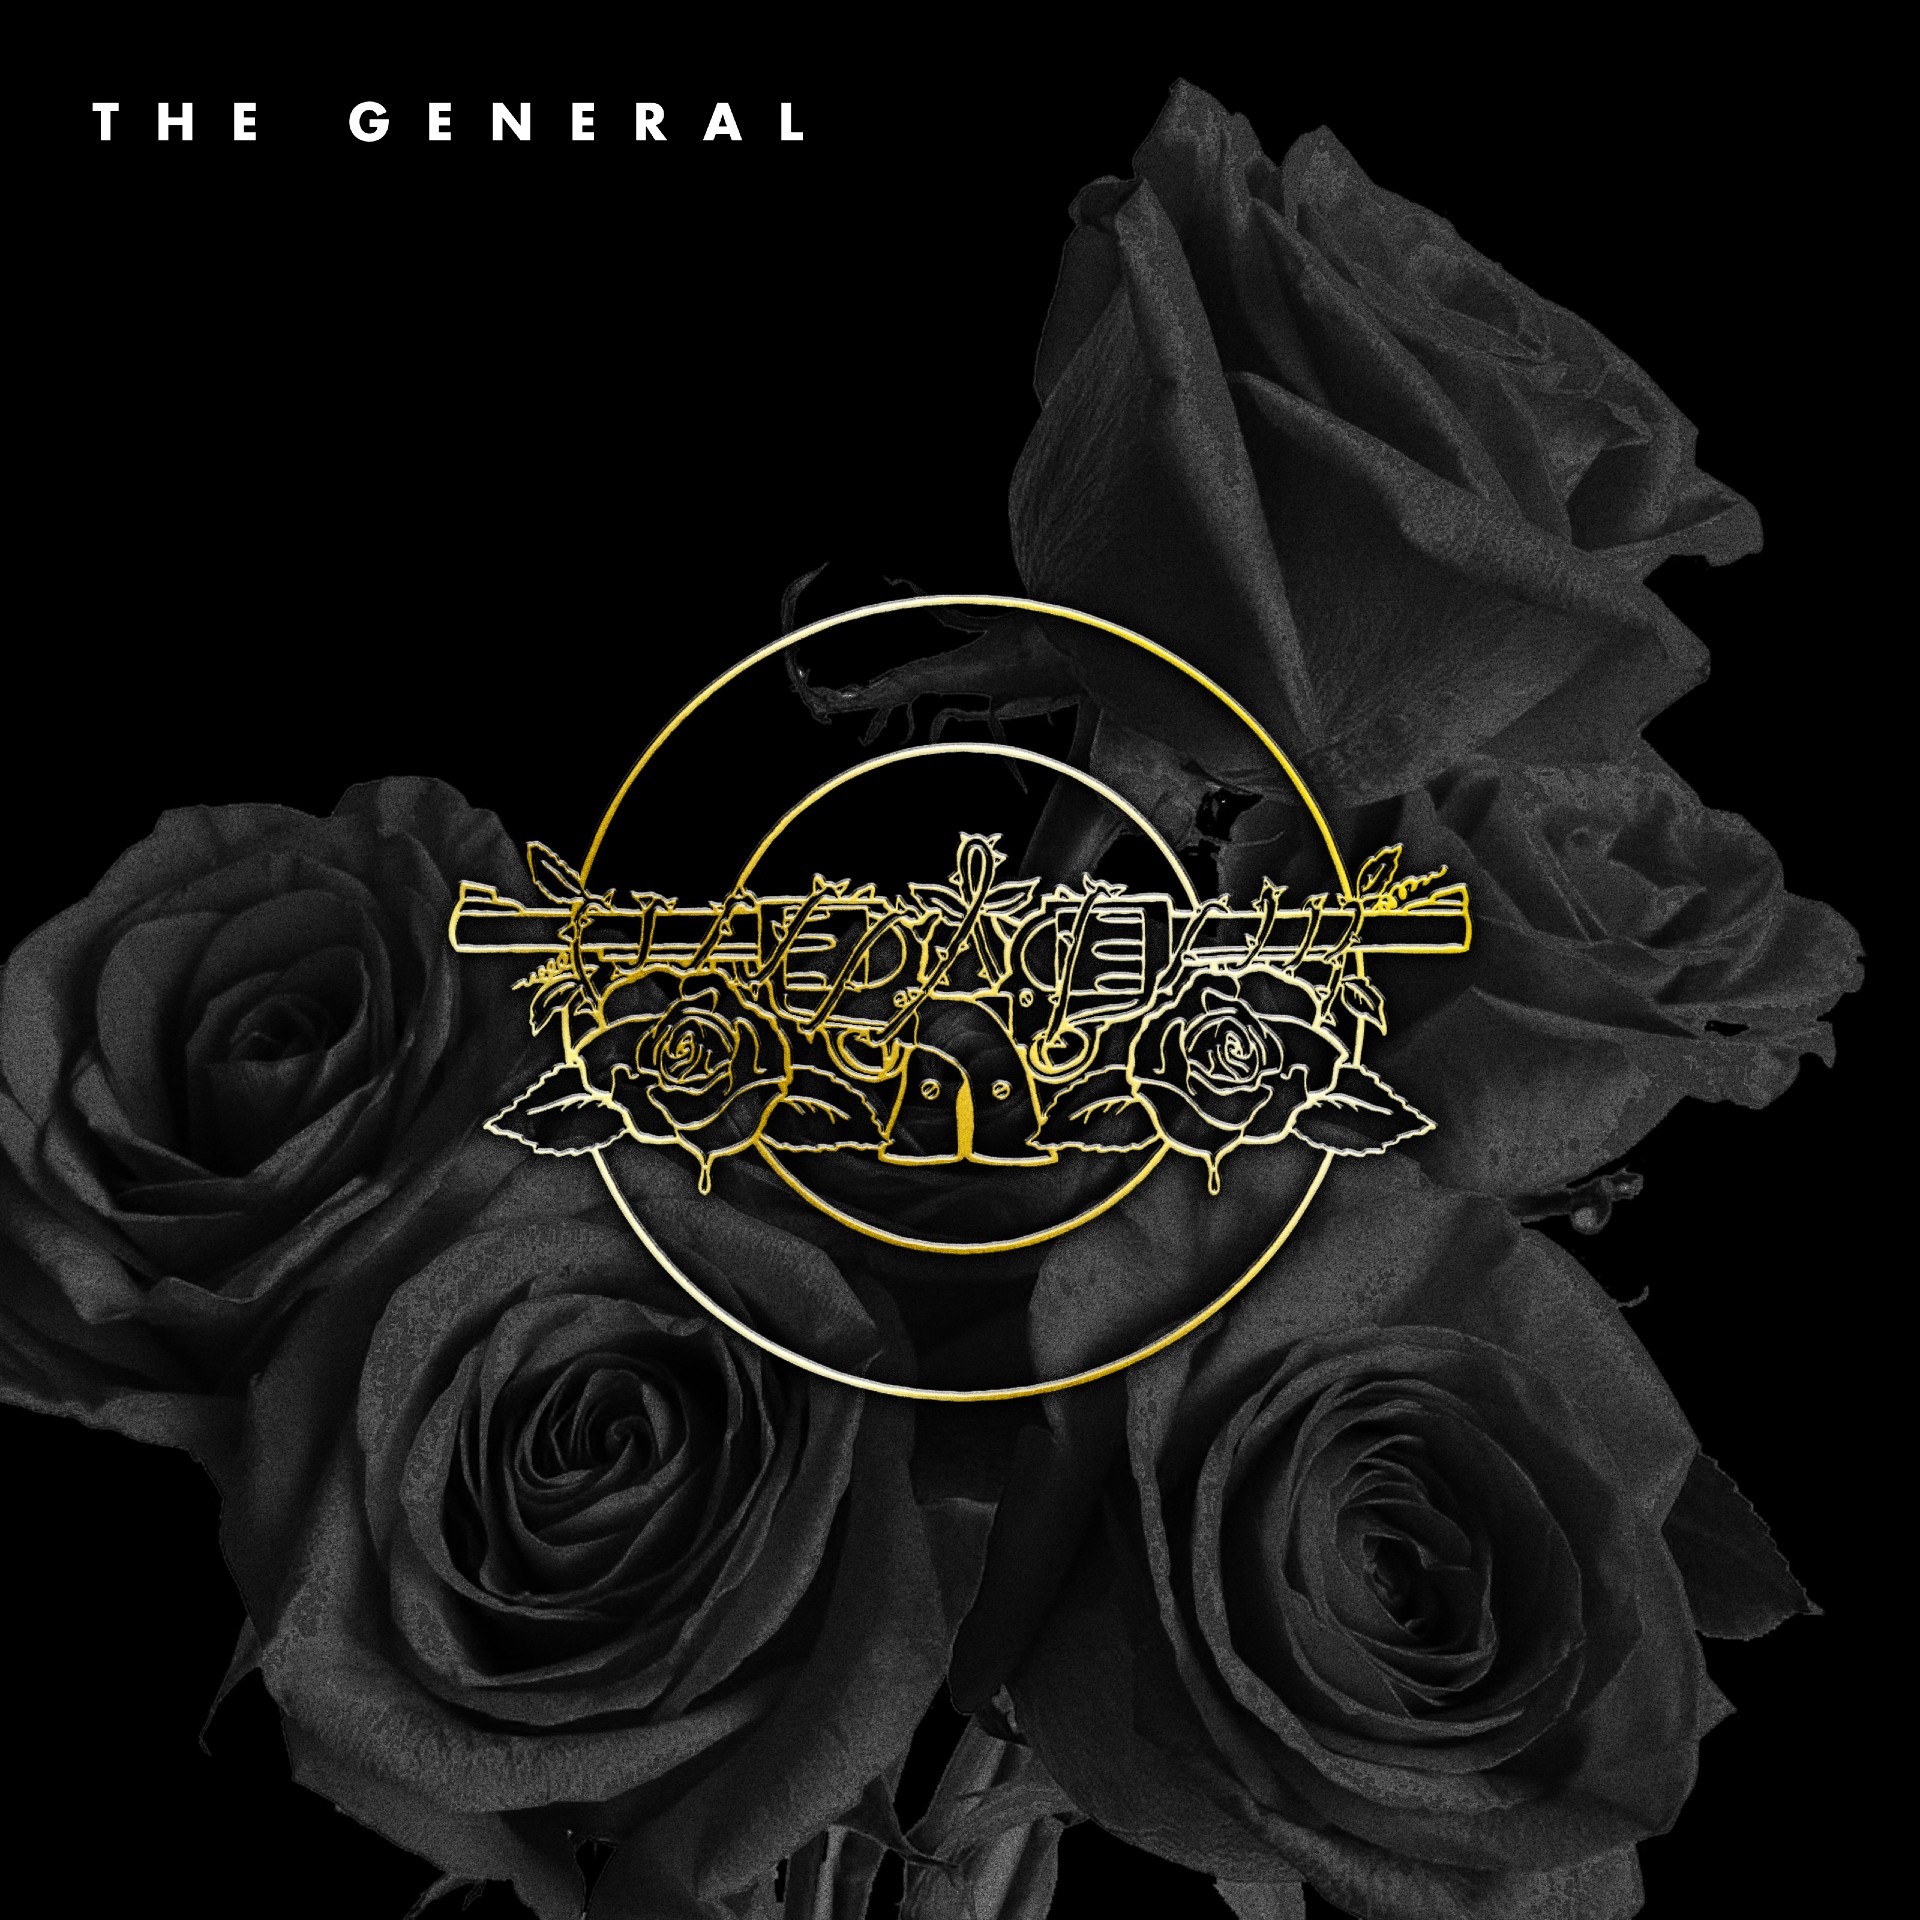 Guns N’ Roses “The General” single artwork